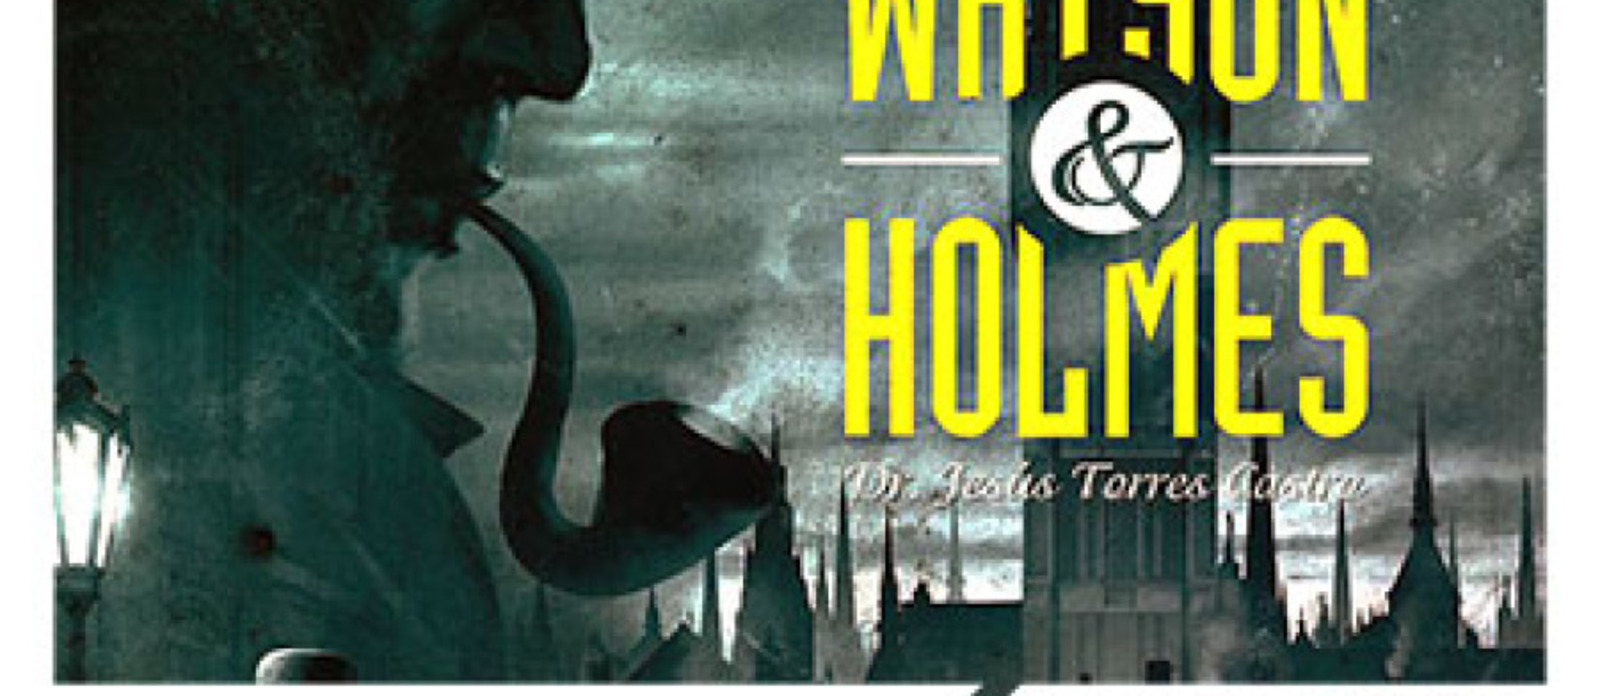 Popoldne družabnih iger: Watson & Holmes in Bang! The Dice game